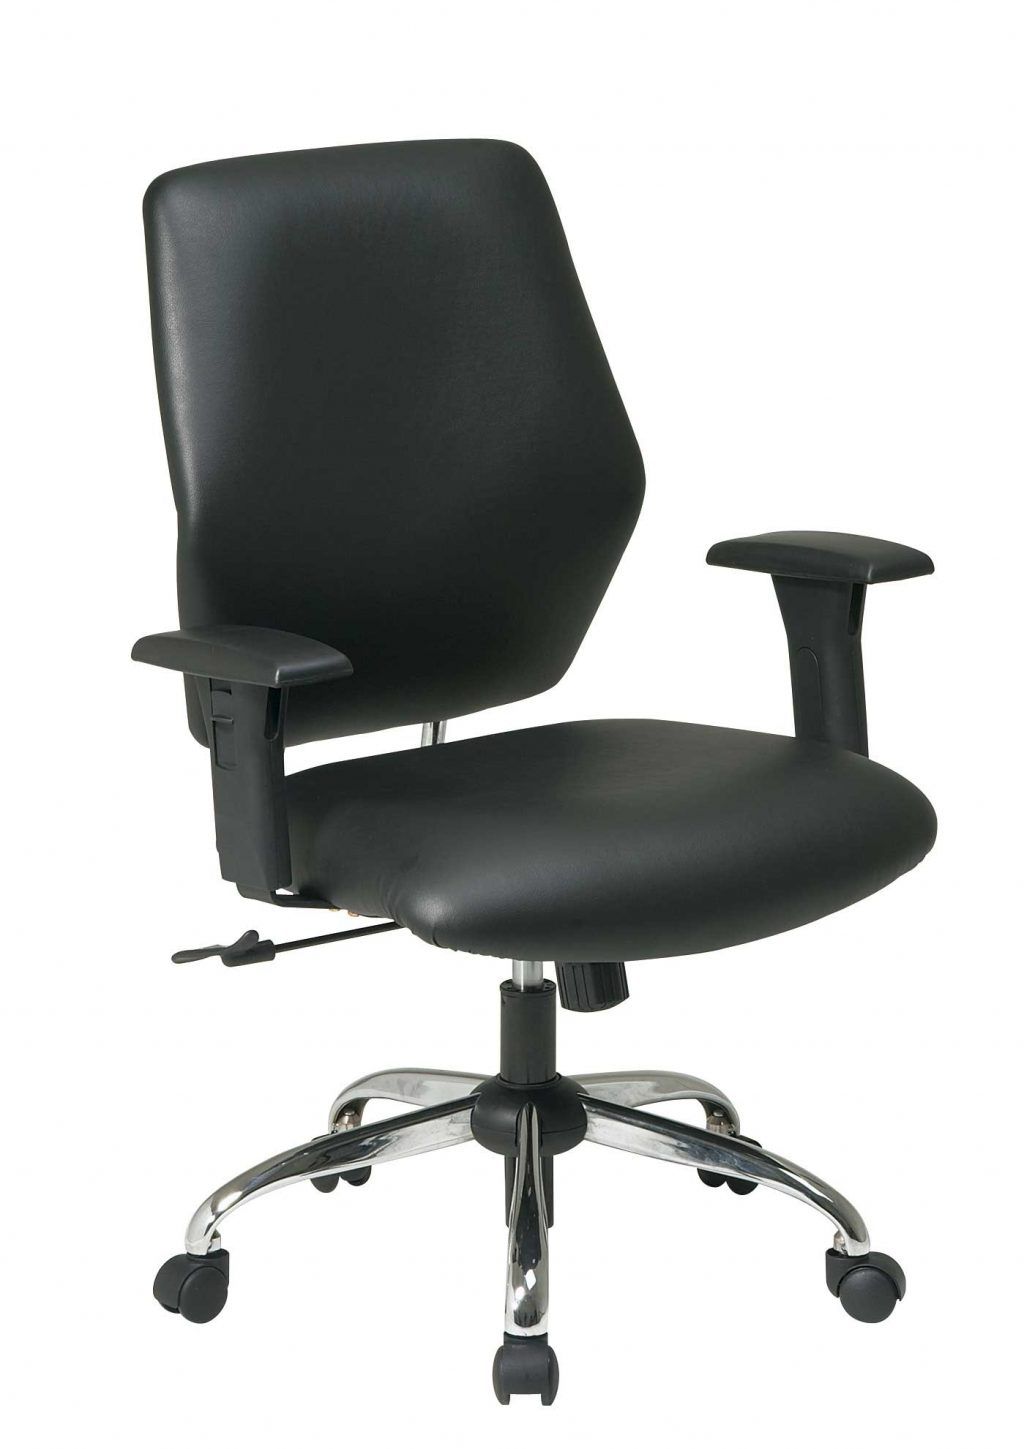 Pinterest. Chair clipart office chair